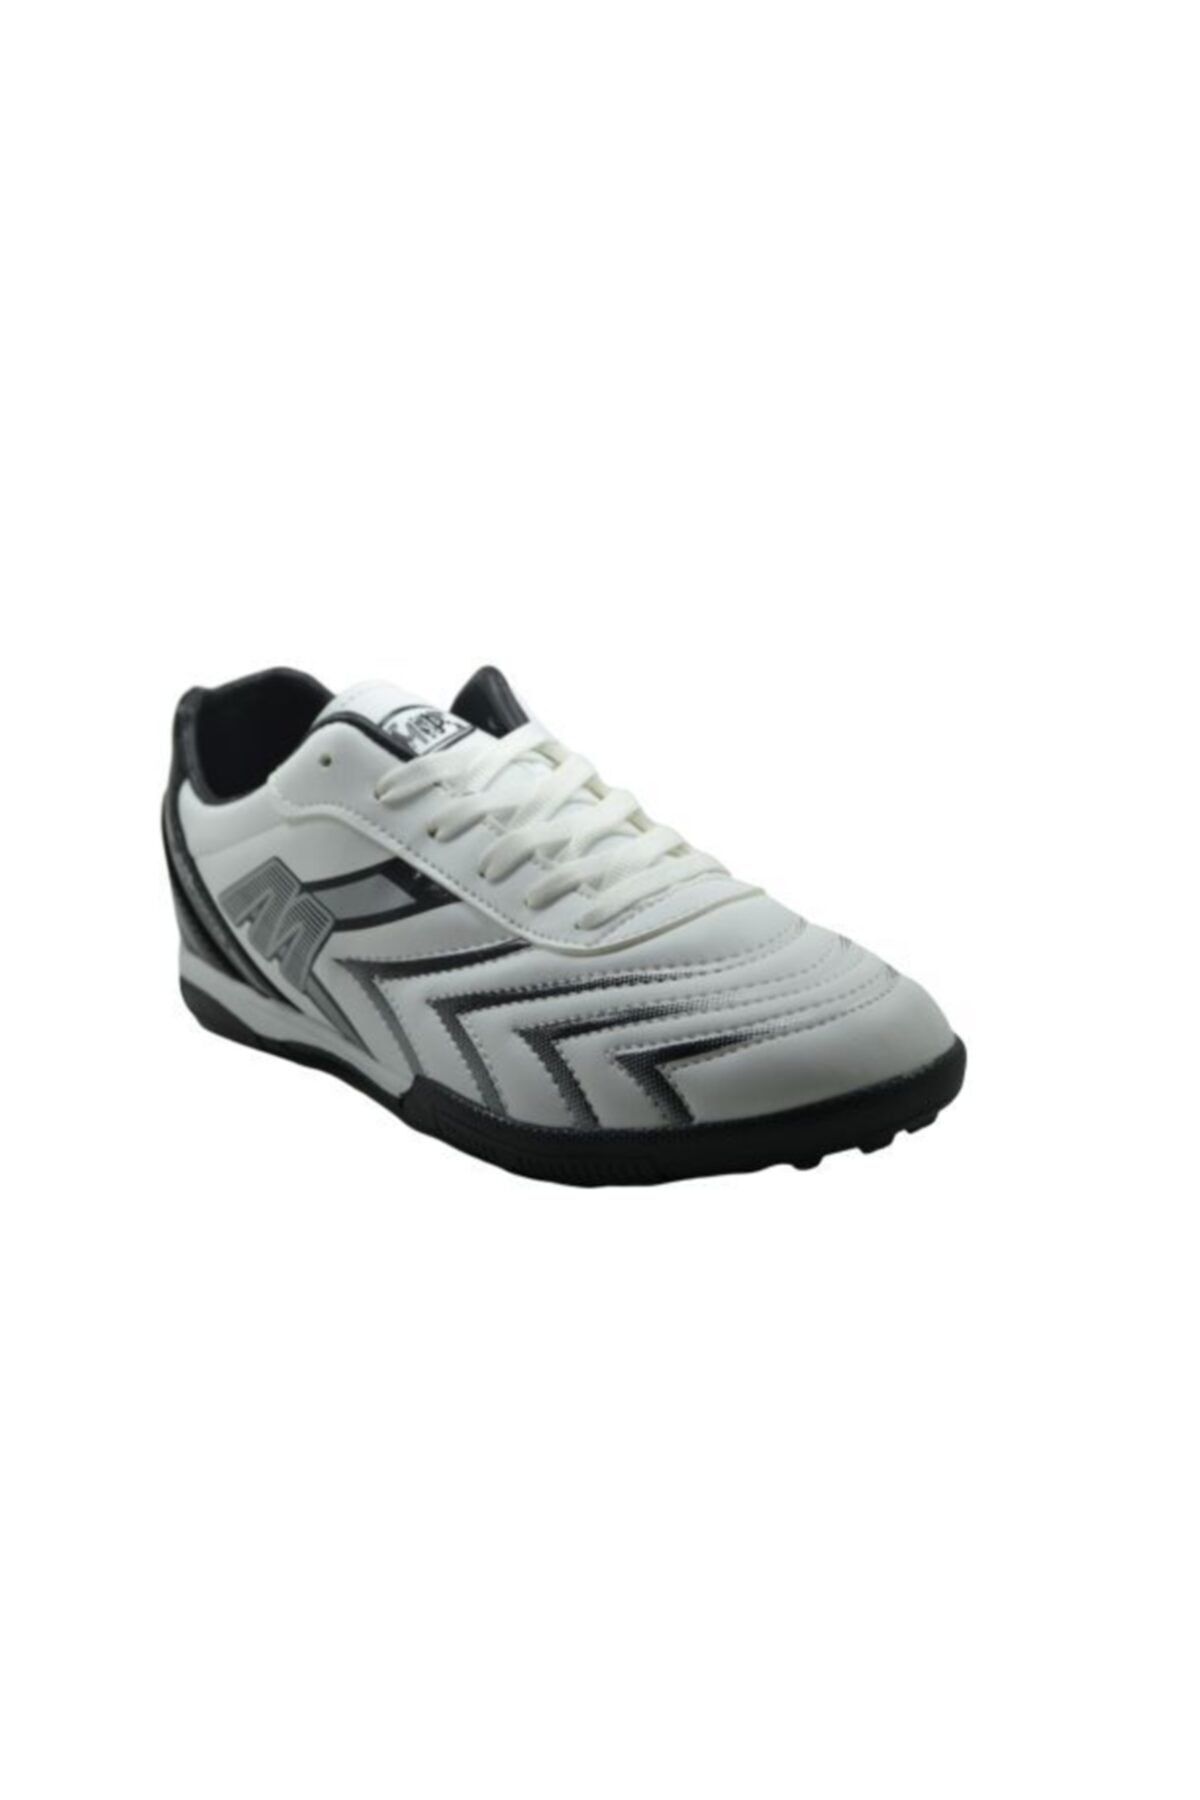 MP Unısex Cilt Beyaz Siyah Halı Saha Ayakkabı 201-1107gr 650